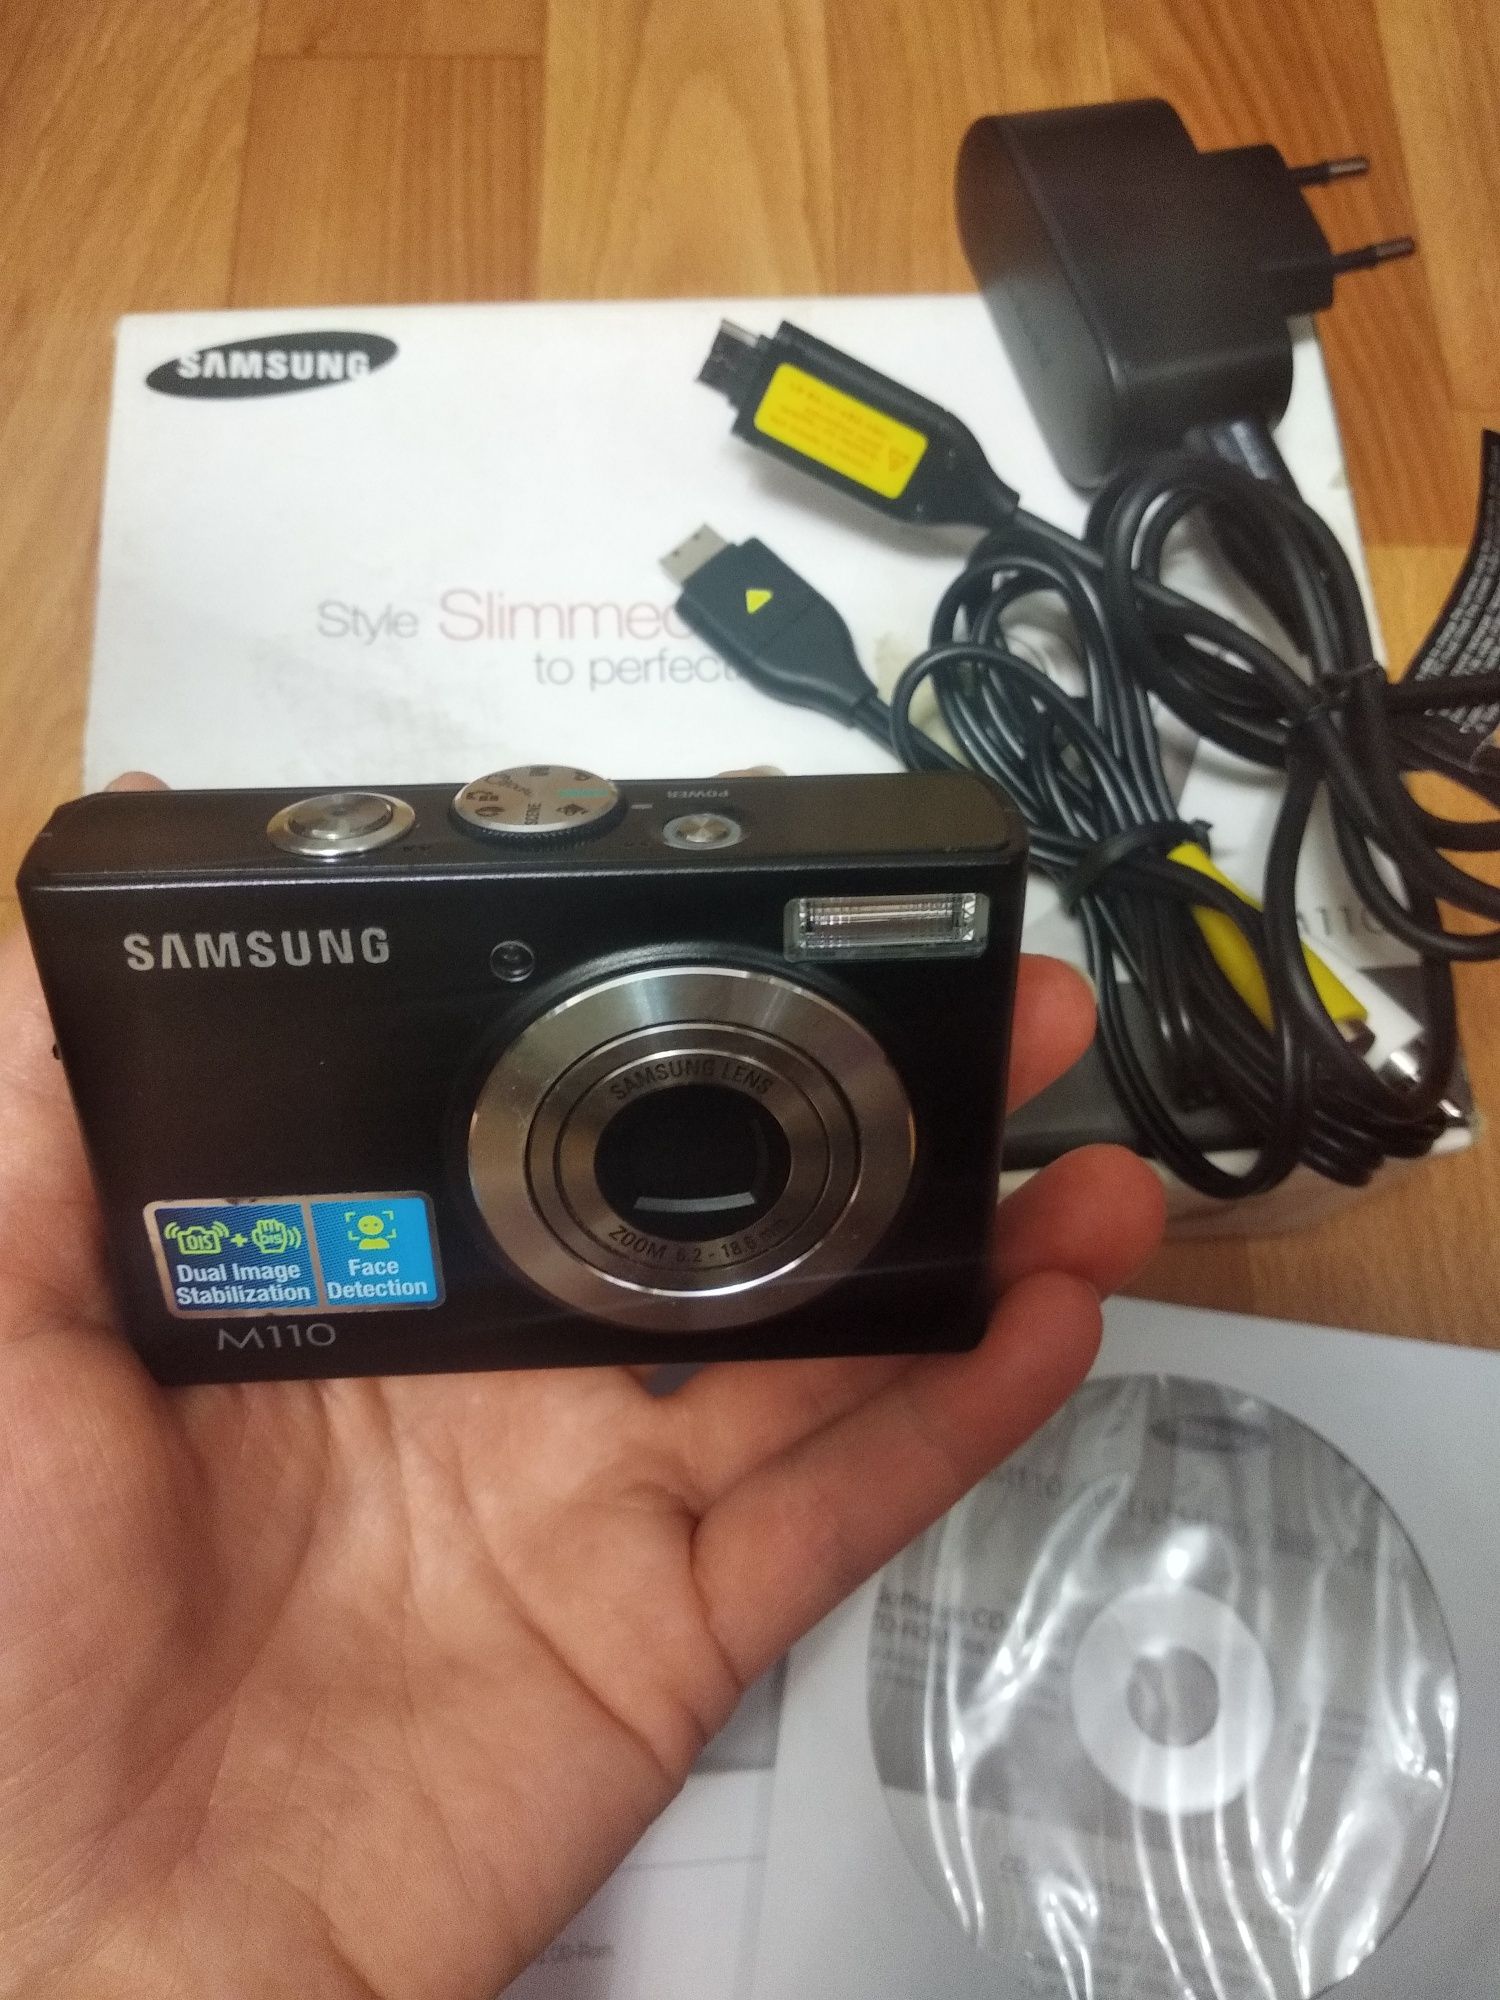 Фотоаппарат Samsung M110.